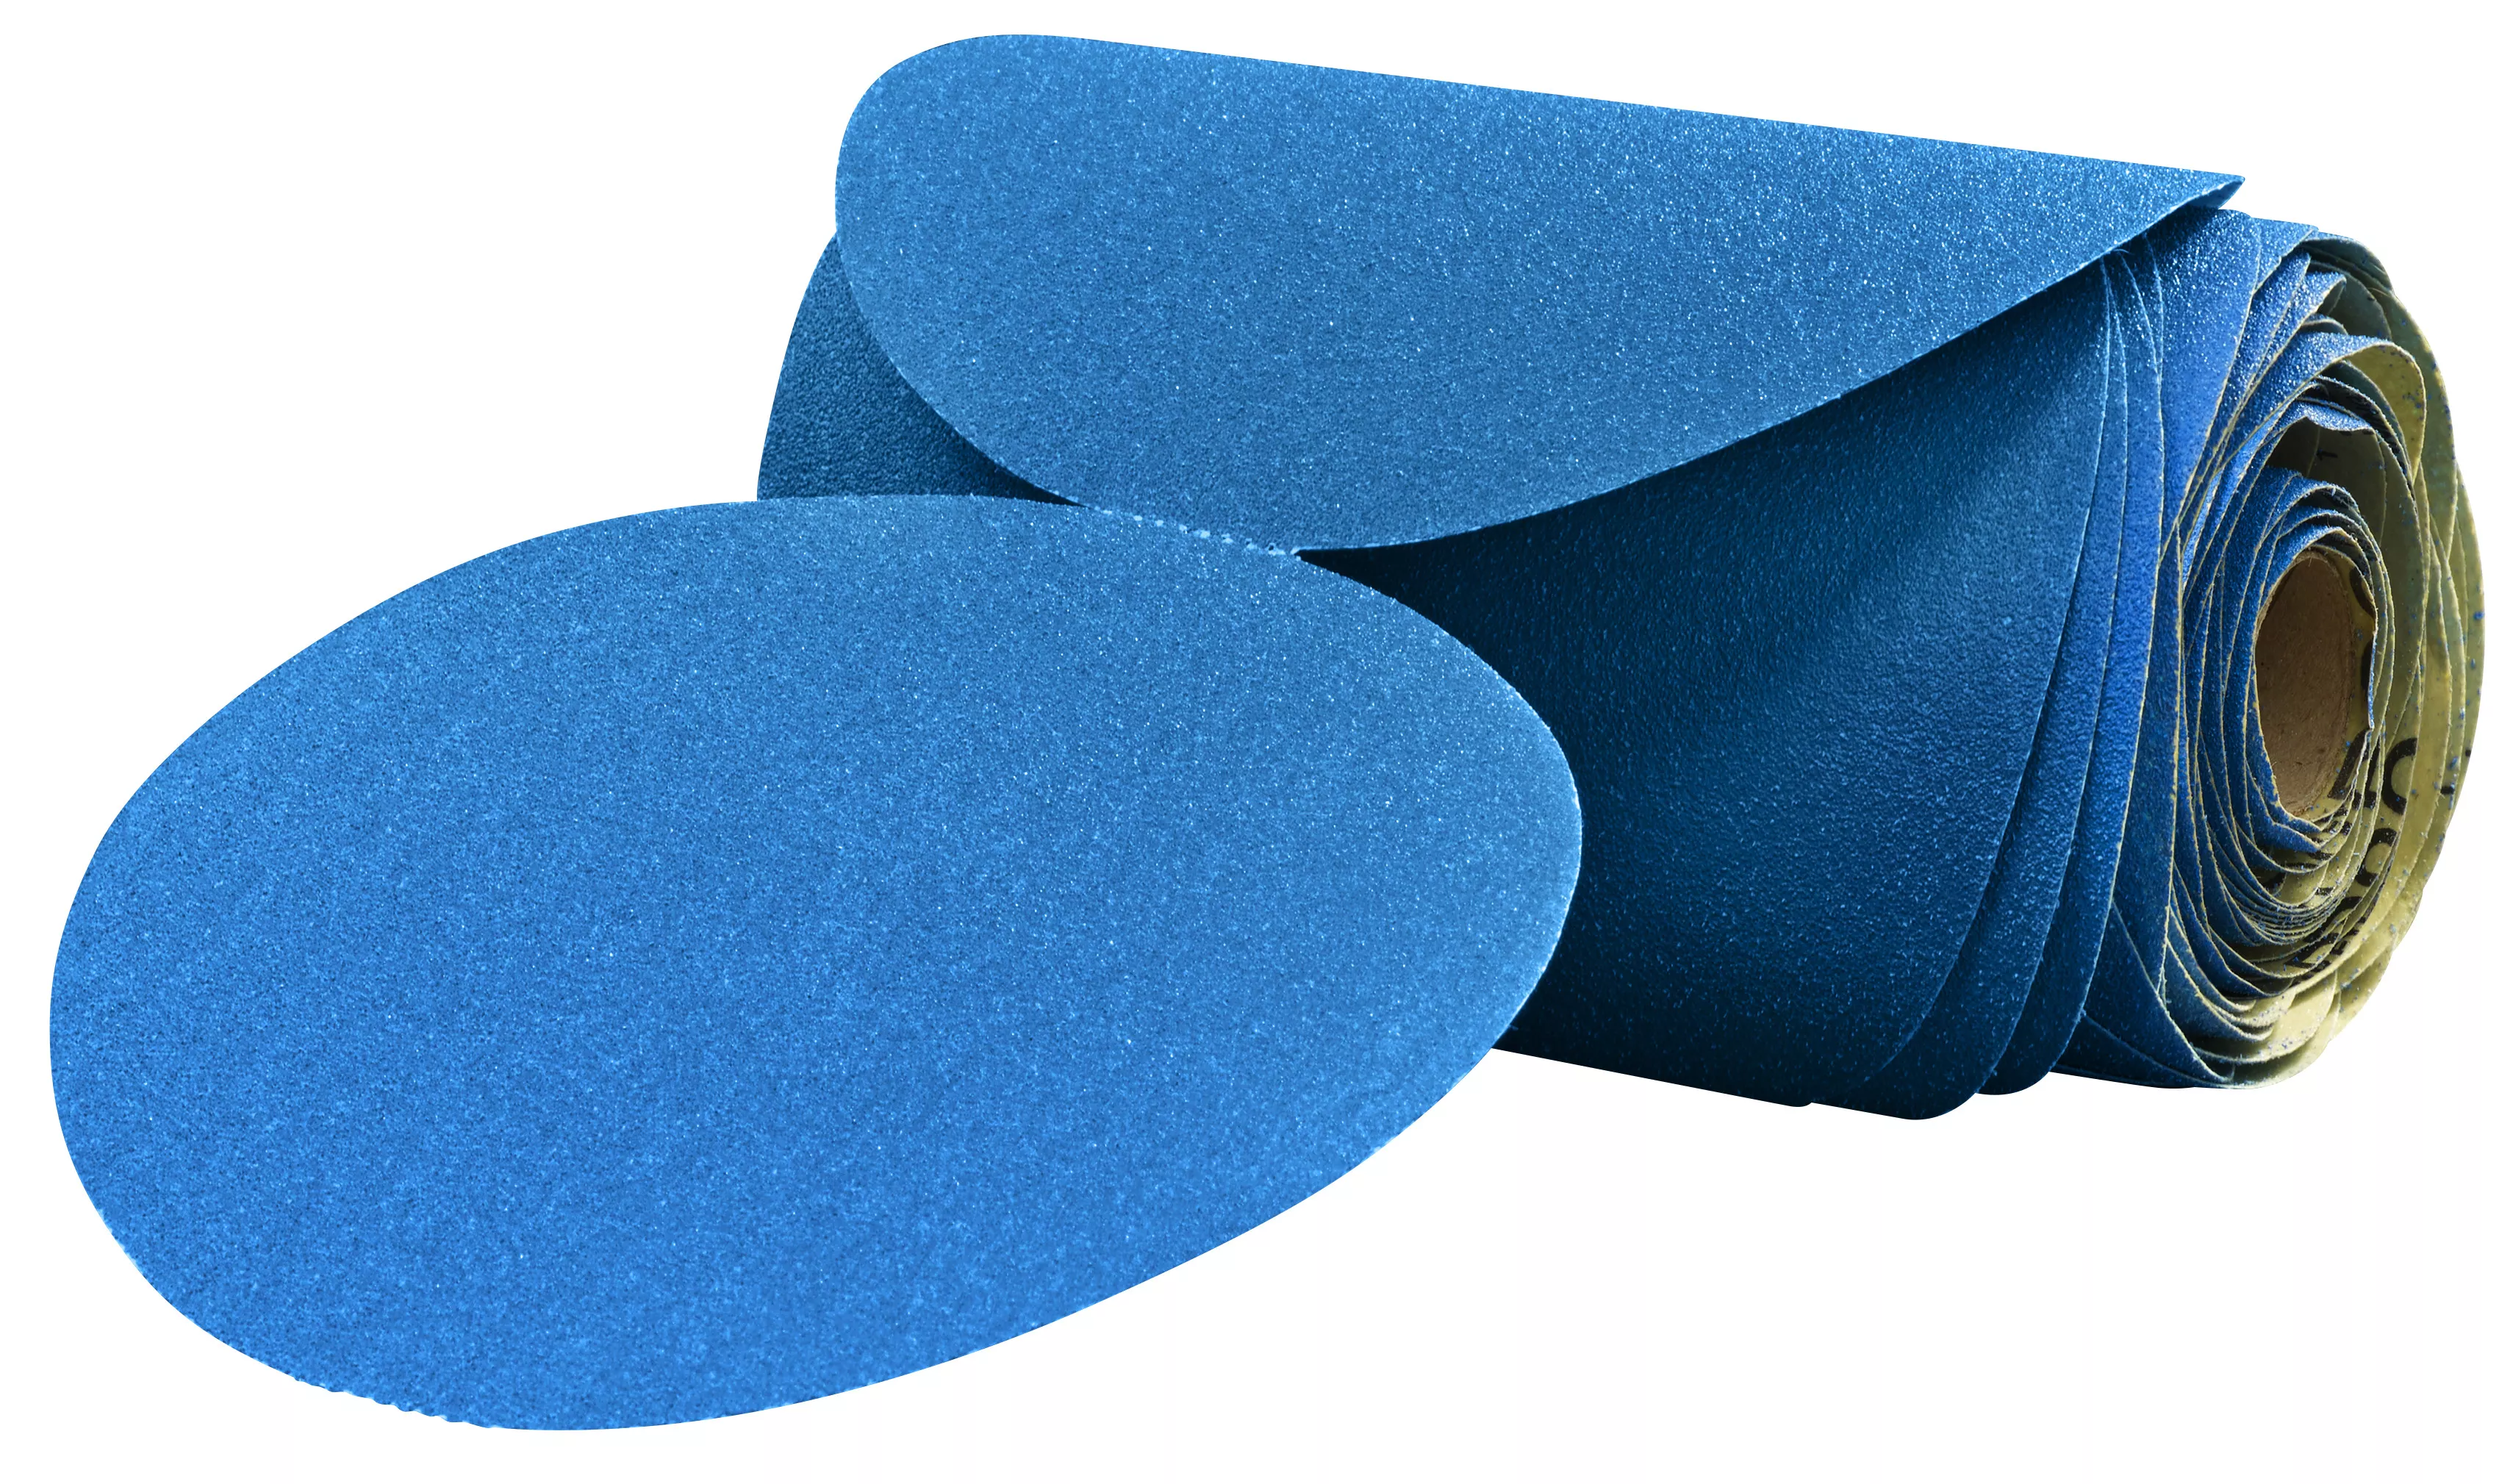 3M™ Stikit™ Blue Abrasive Disc Roll, 36212, 6 in, 500 grade, 100 discs
per roll, 5 rolls per case